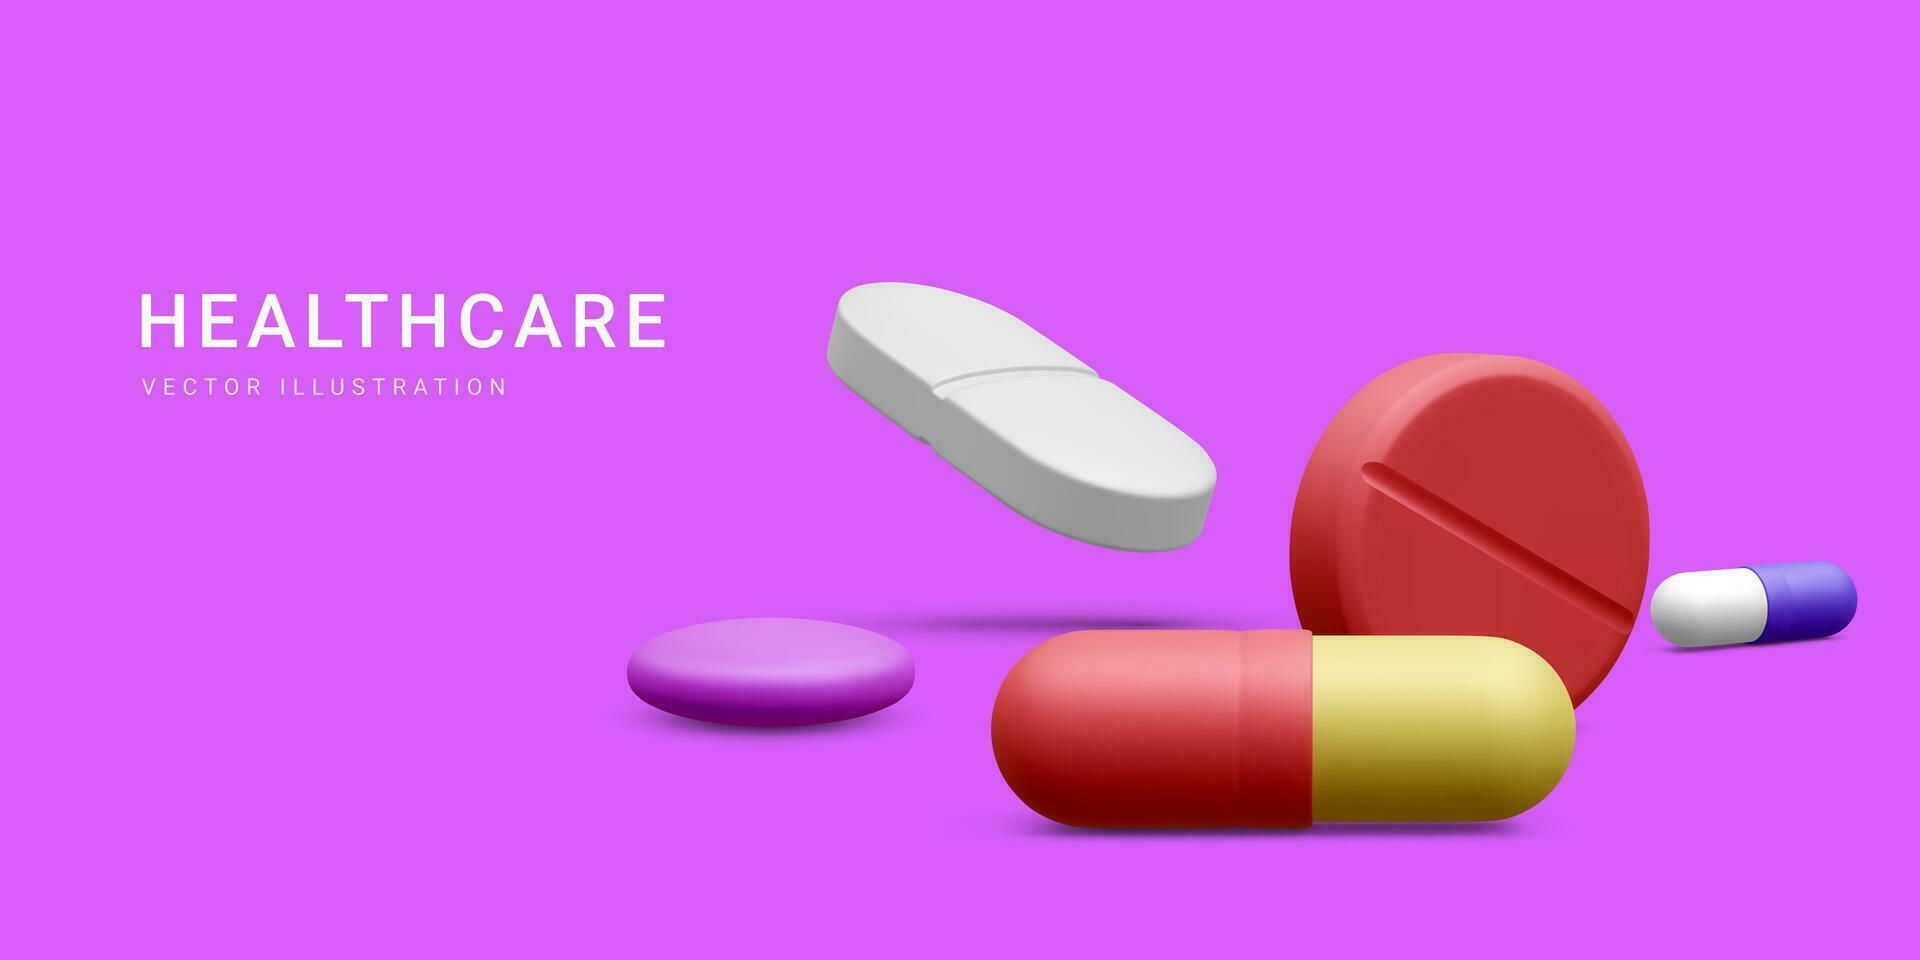 3d realistisch Apotheke Droge Gesundheit Tablette. medizinisch oder pharmazeutische Banner mit Pillen. Vektor Illustration